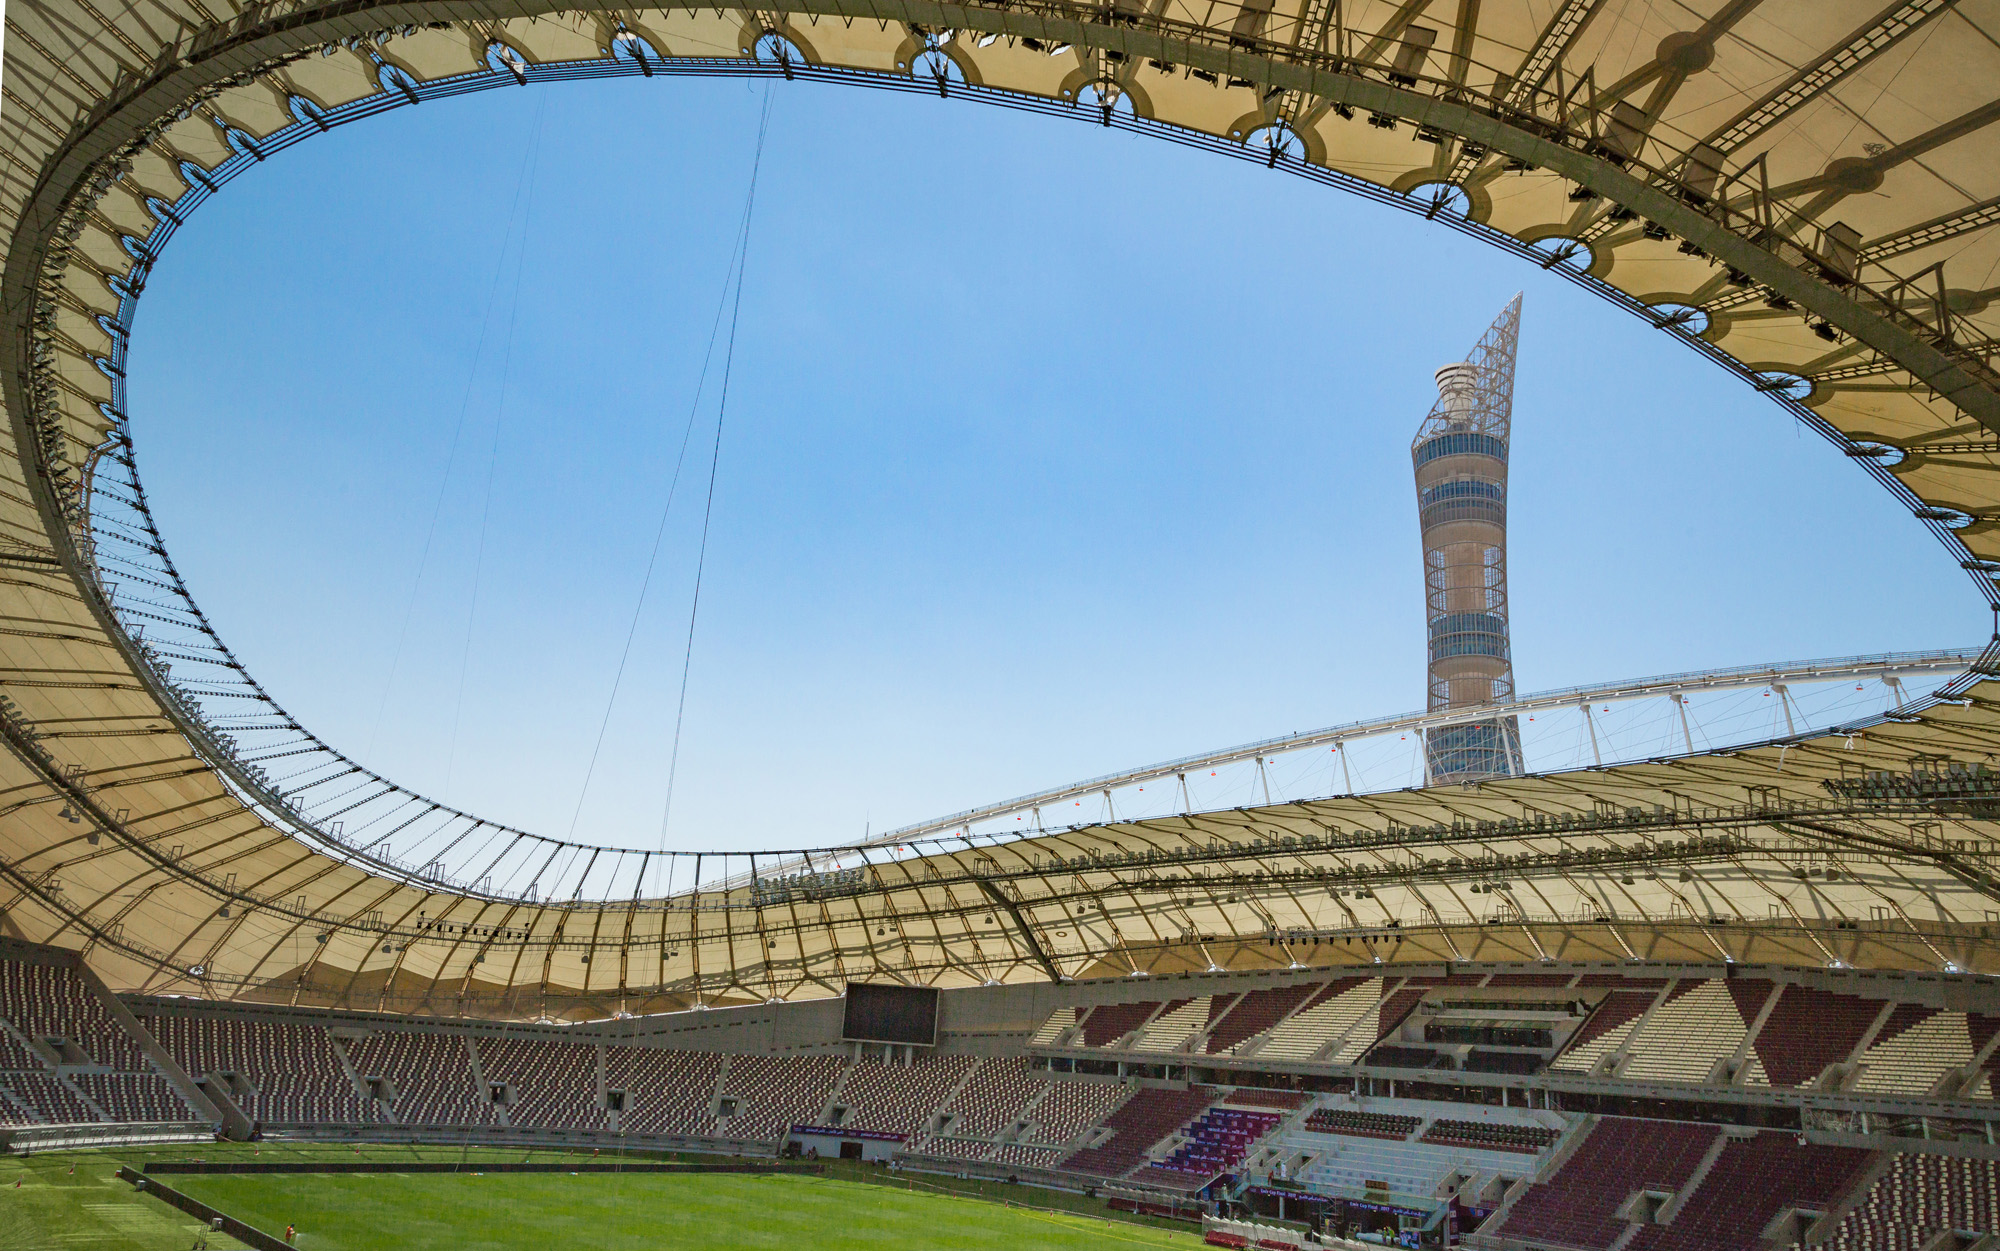 El estadio Internacional Khalifa albergará el partido entre la Selección de Ecuador y Países Bajos. Foto: FIFA.